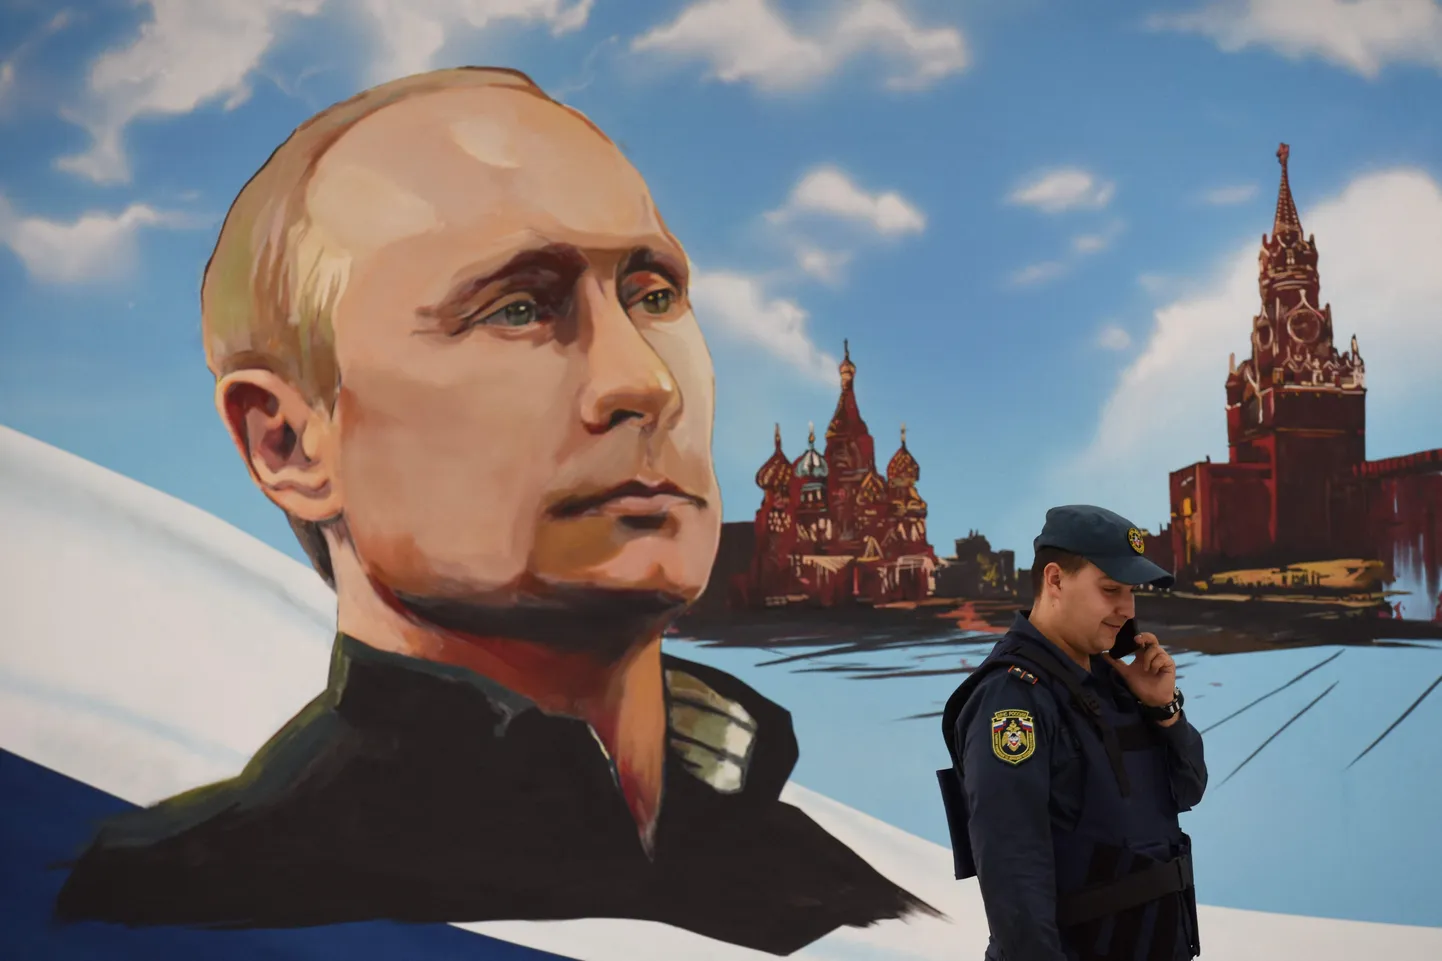 Vene päästeteenistuja räägib mobiiltelefoniga suure Venemaa presidendi plakati taustal, mis riputati üles selle aasta sügisel toimuvate kohalike valimiste ajaks.